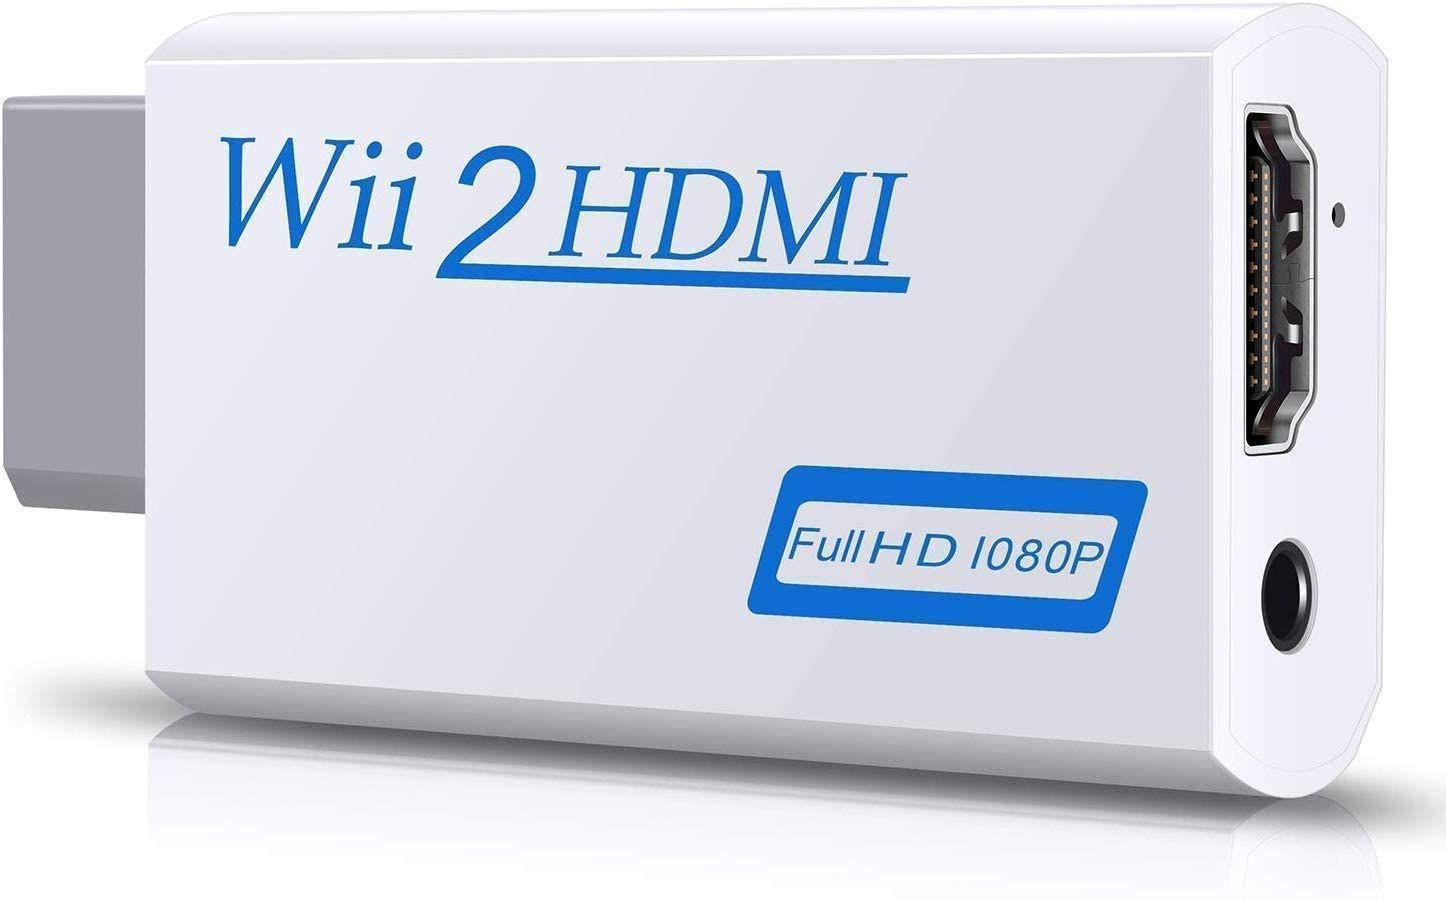 Adaptador HDMI para WII